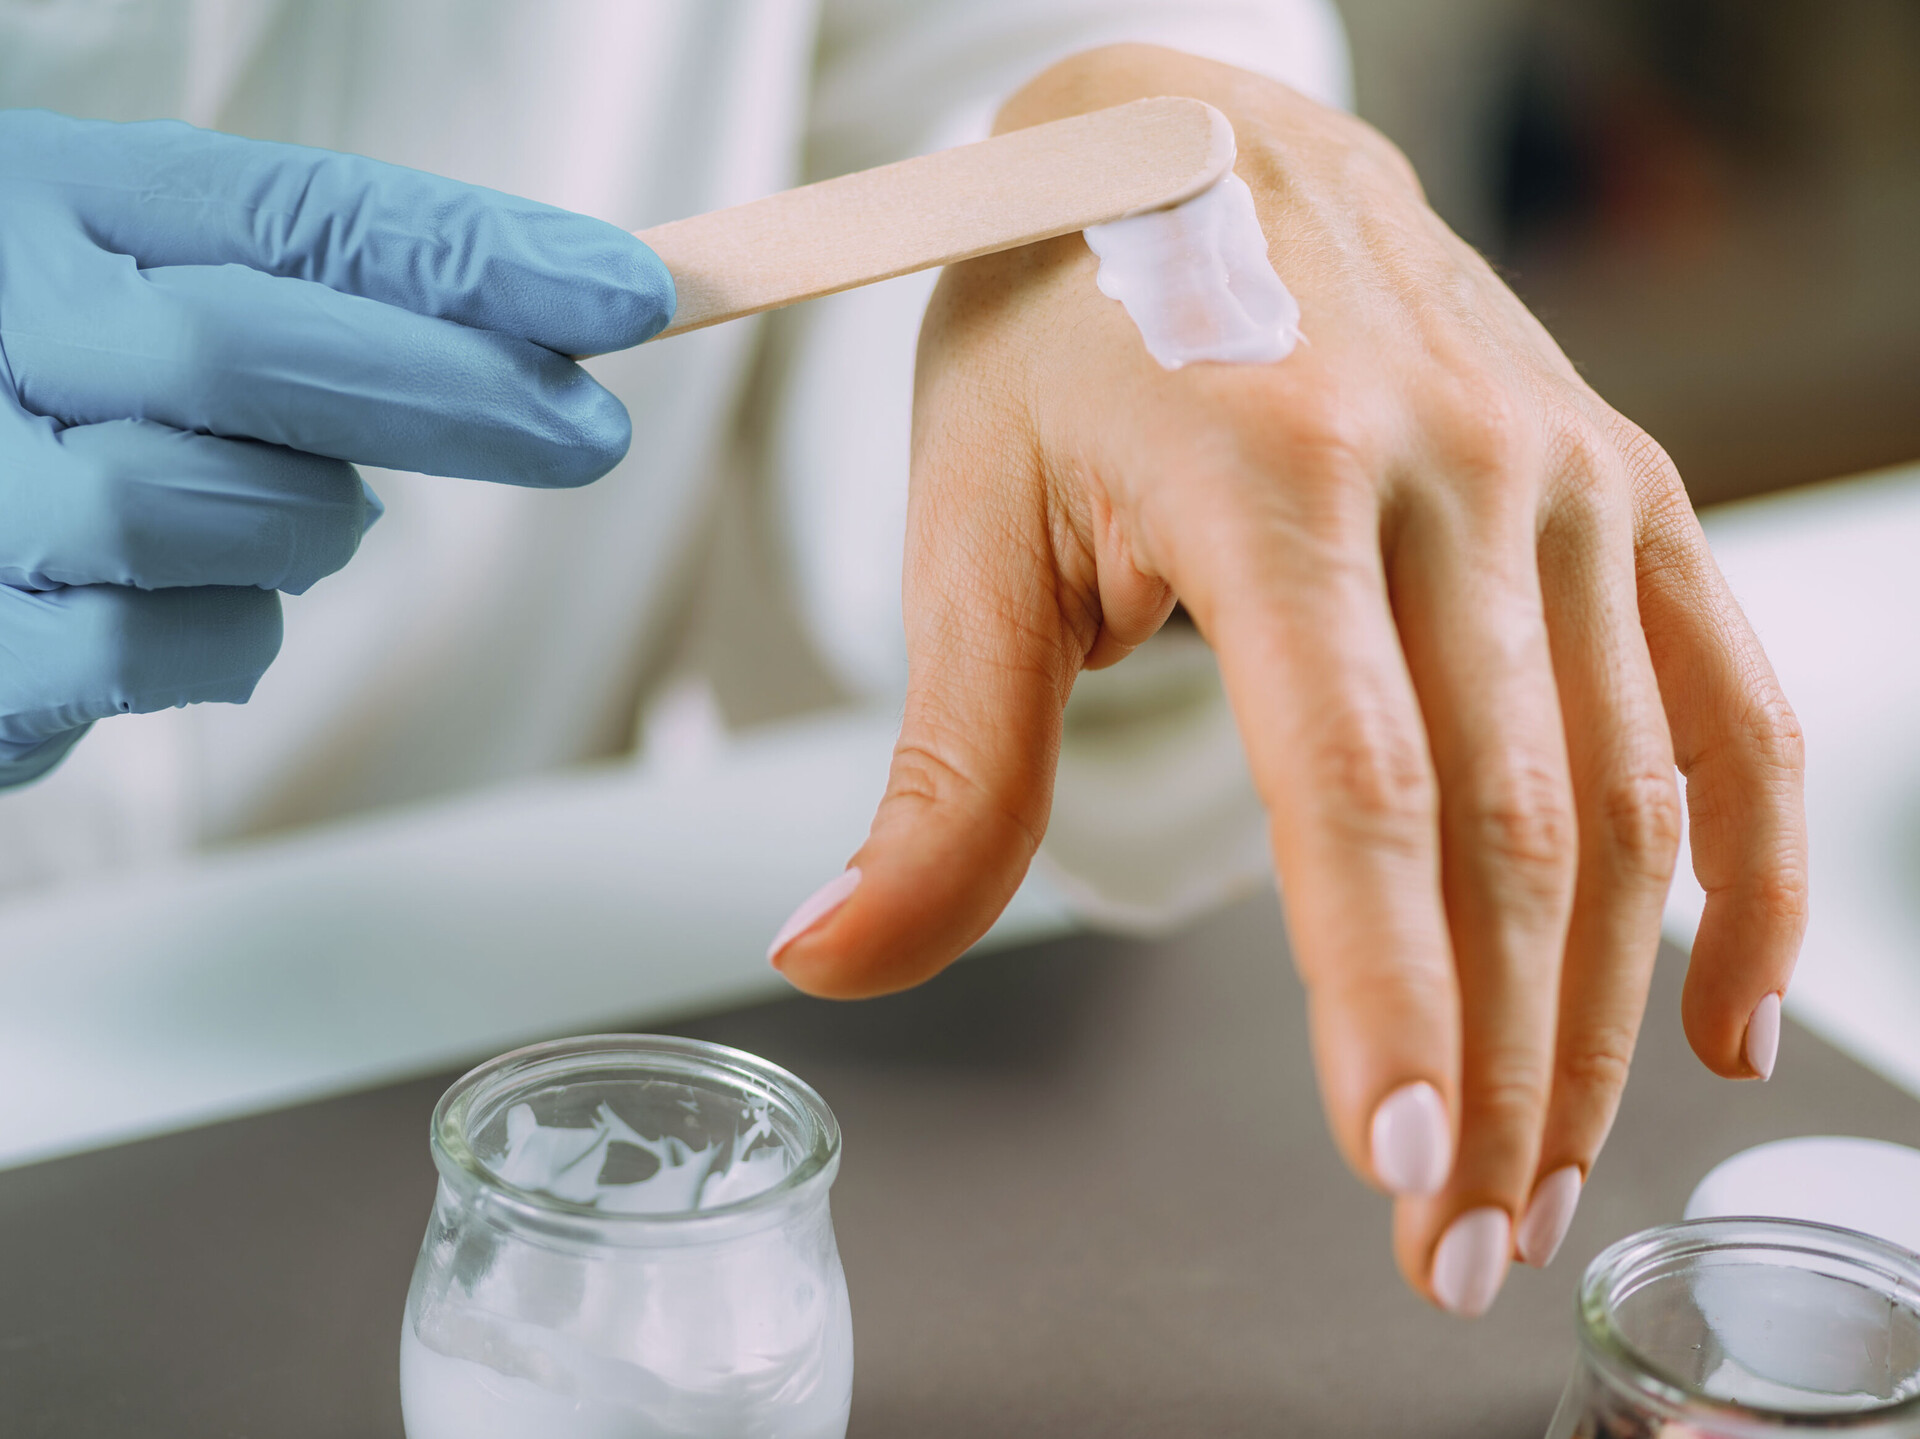 Eine behandschuhte rechte Hand streicht Creme mit einem Spatel auf die linke Hand. Die Sixtus-Forschung spielt eine wichtige Rolle bei der Entwicklung von Hautpflege-Produkten.